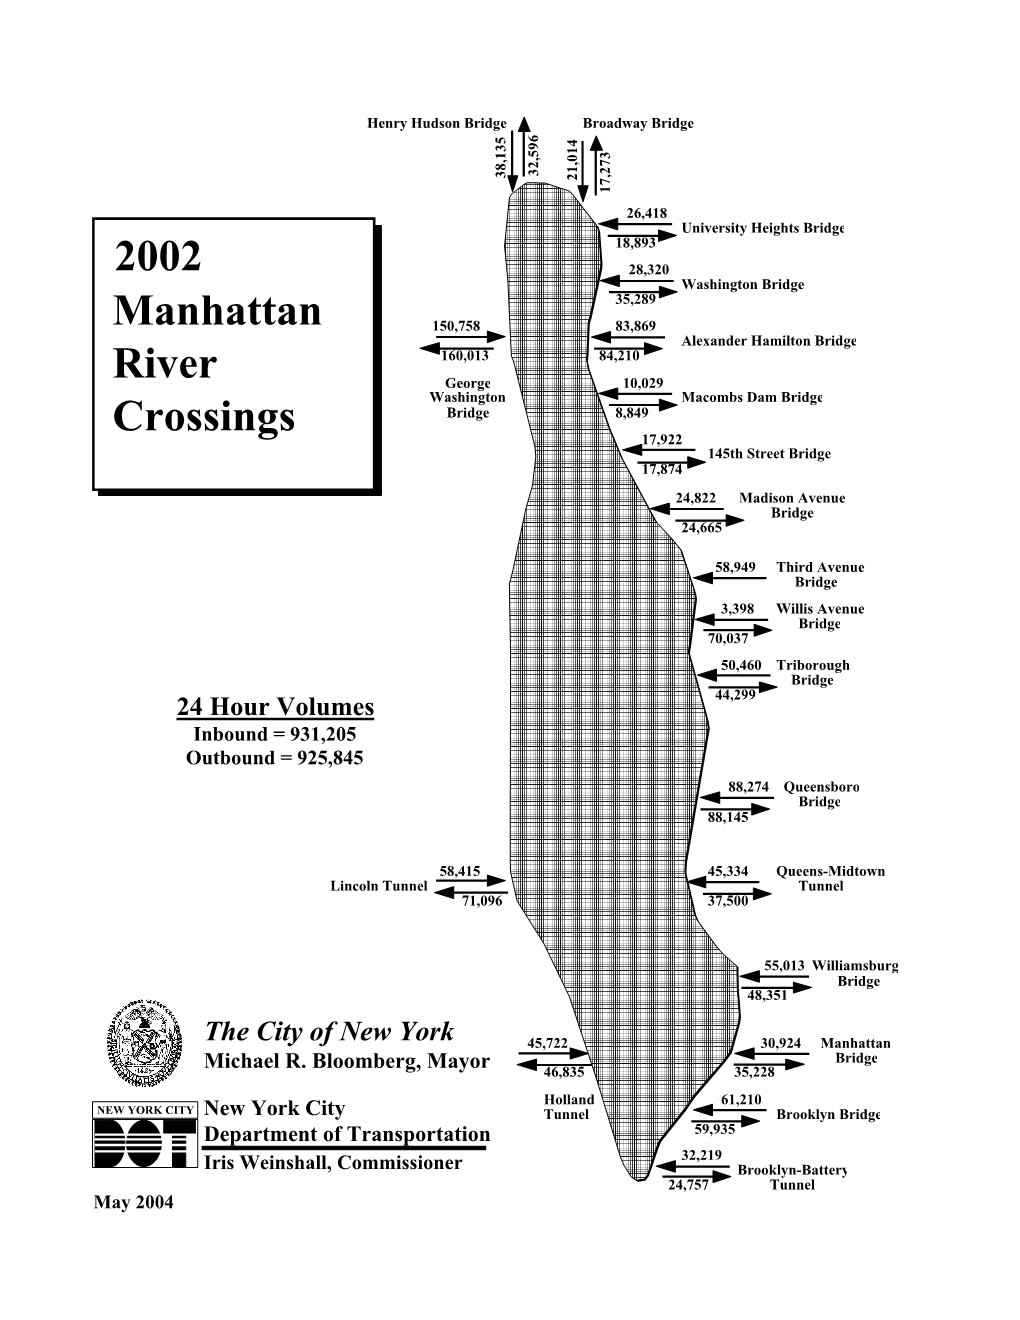 2002 Manhattan River Crossings Vs